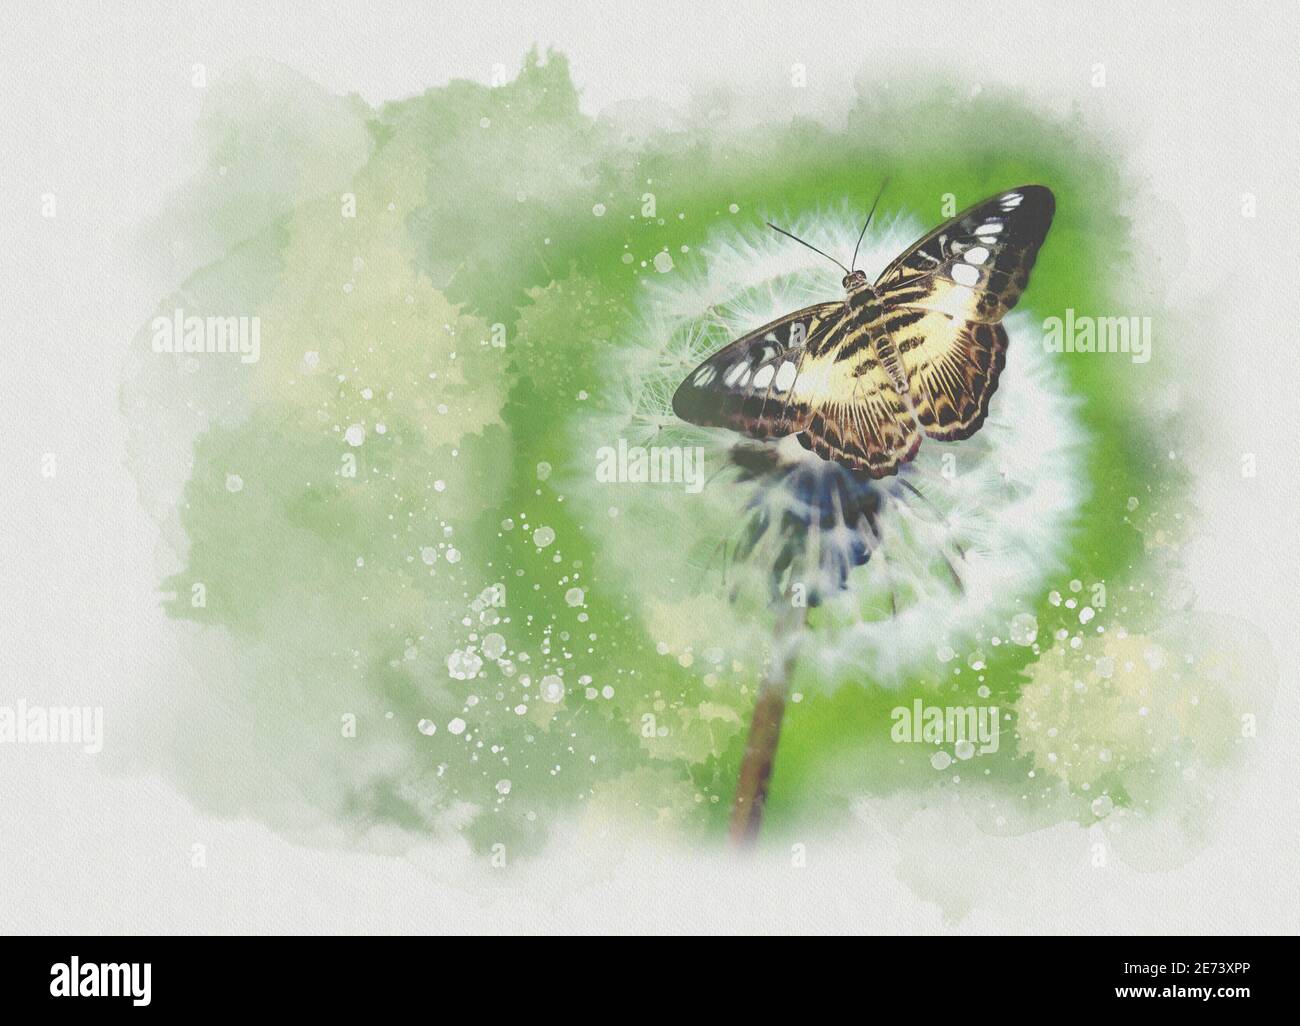 Mariposa aterrizando en una cabeza de semilla de diente de león, ilustración Foto de stock